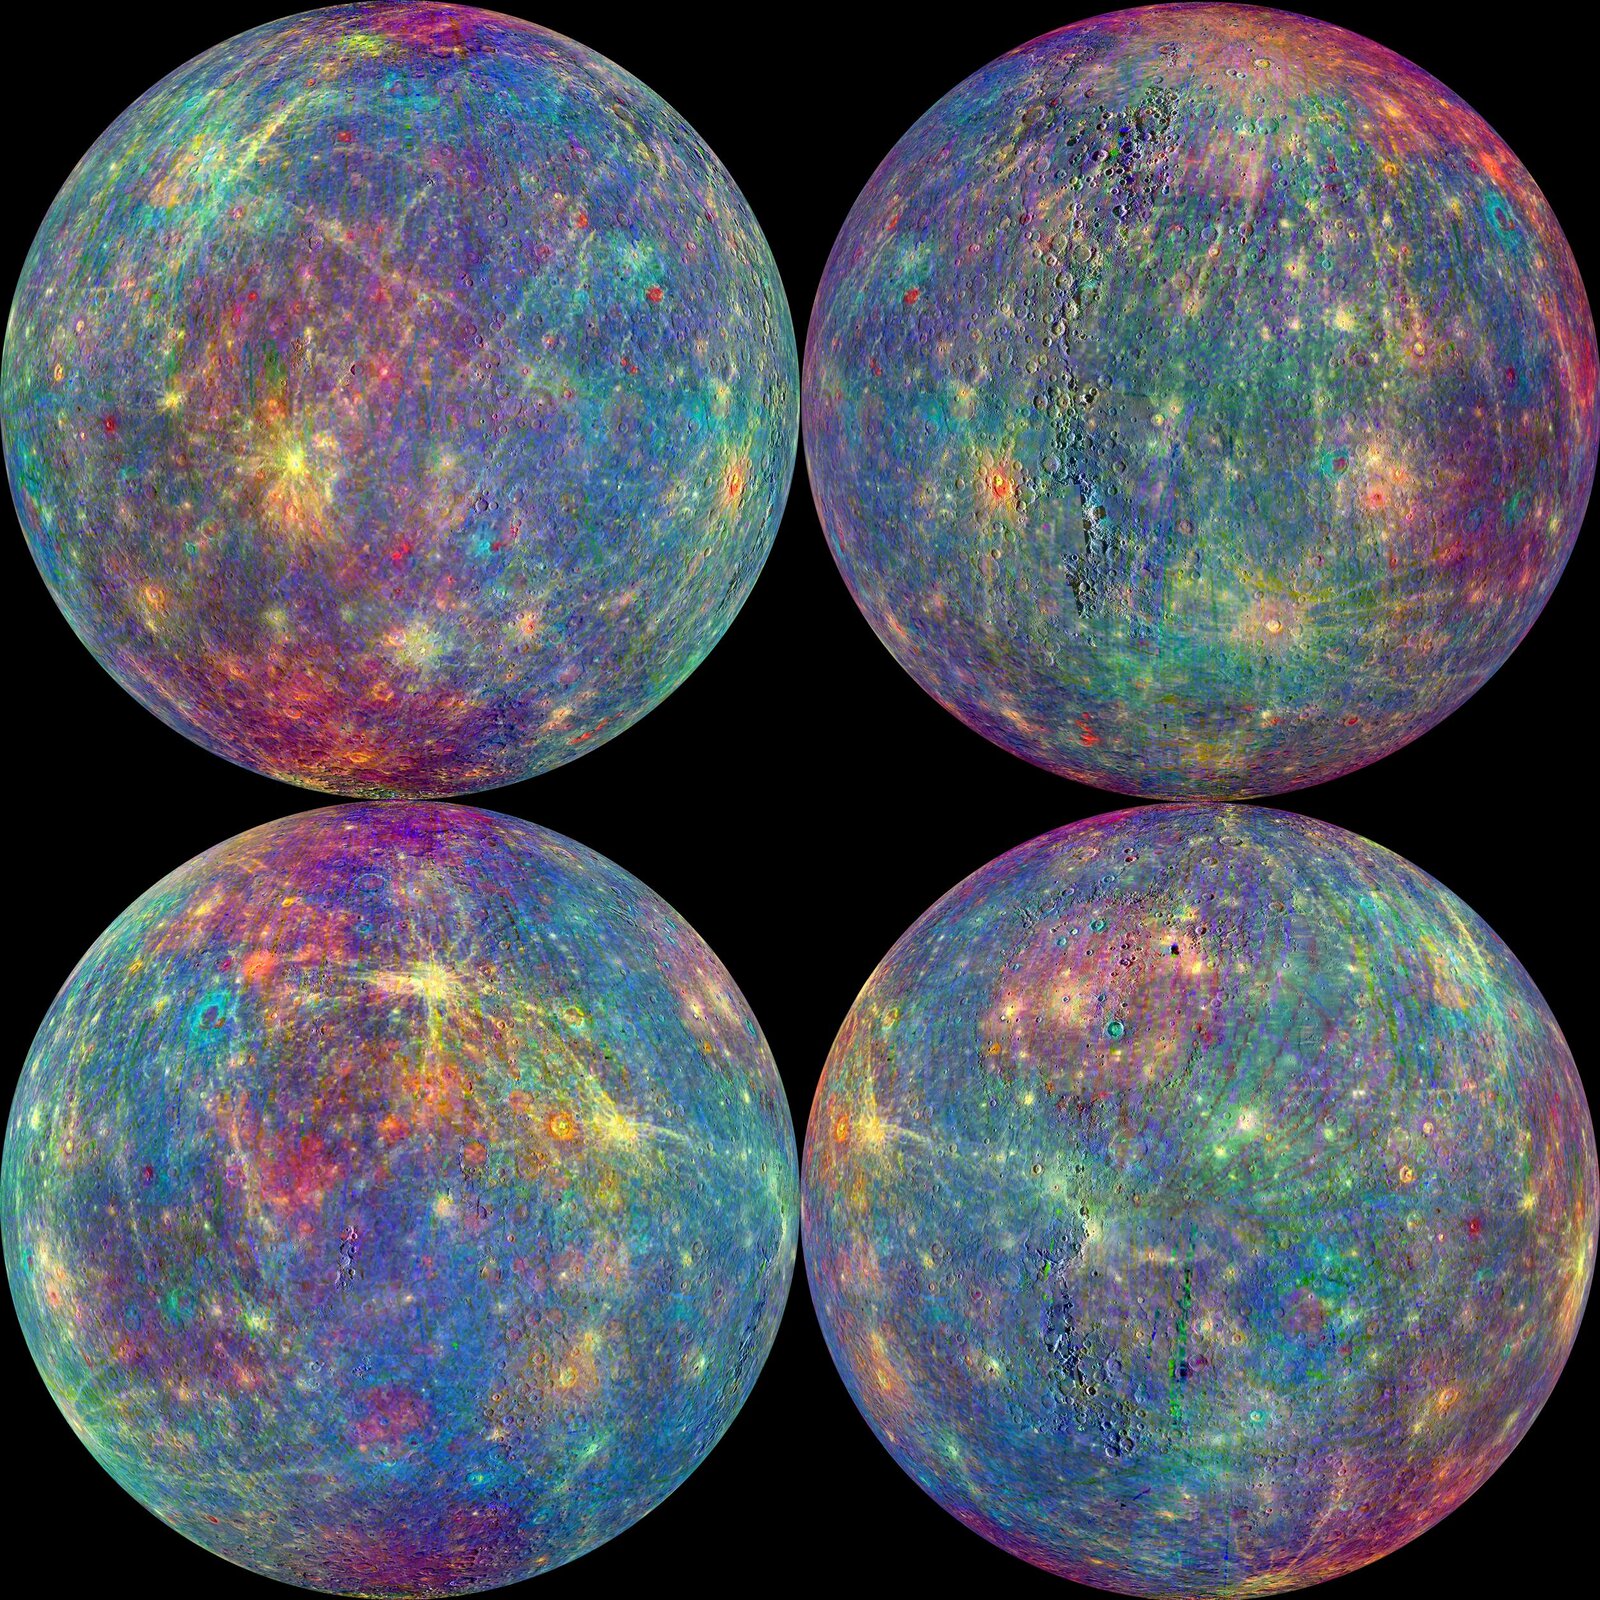 Rys 6. Ilustracja przedstawia cztery grafiki pokazujące najdokładniejszą mapę powierzchni Merkurego. Grafiki przedstawiają kulistą planetę z każdej strony na tle czarnej przestrzeni kosmicznej. Powierzchnia planety przybiera kolory od błękitnego do fioletowego. Obszary o różnych kolorach odpowiadają różnemu składowi mineralnemu powierzchni planety. Dane uzyskano poprzez pomiar spektrograficzny światła odbitego od powierzchni Merkurego. Zdjęcia wykorzystane do uzyskania danych wykonane zostały przez sondę kosmiczną Messenger.